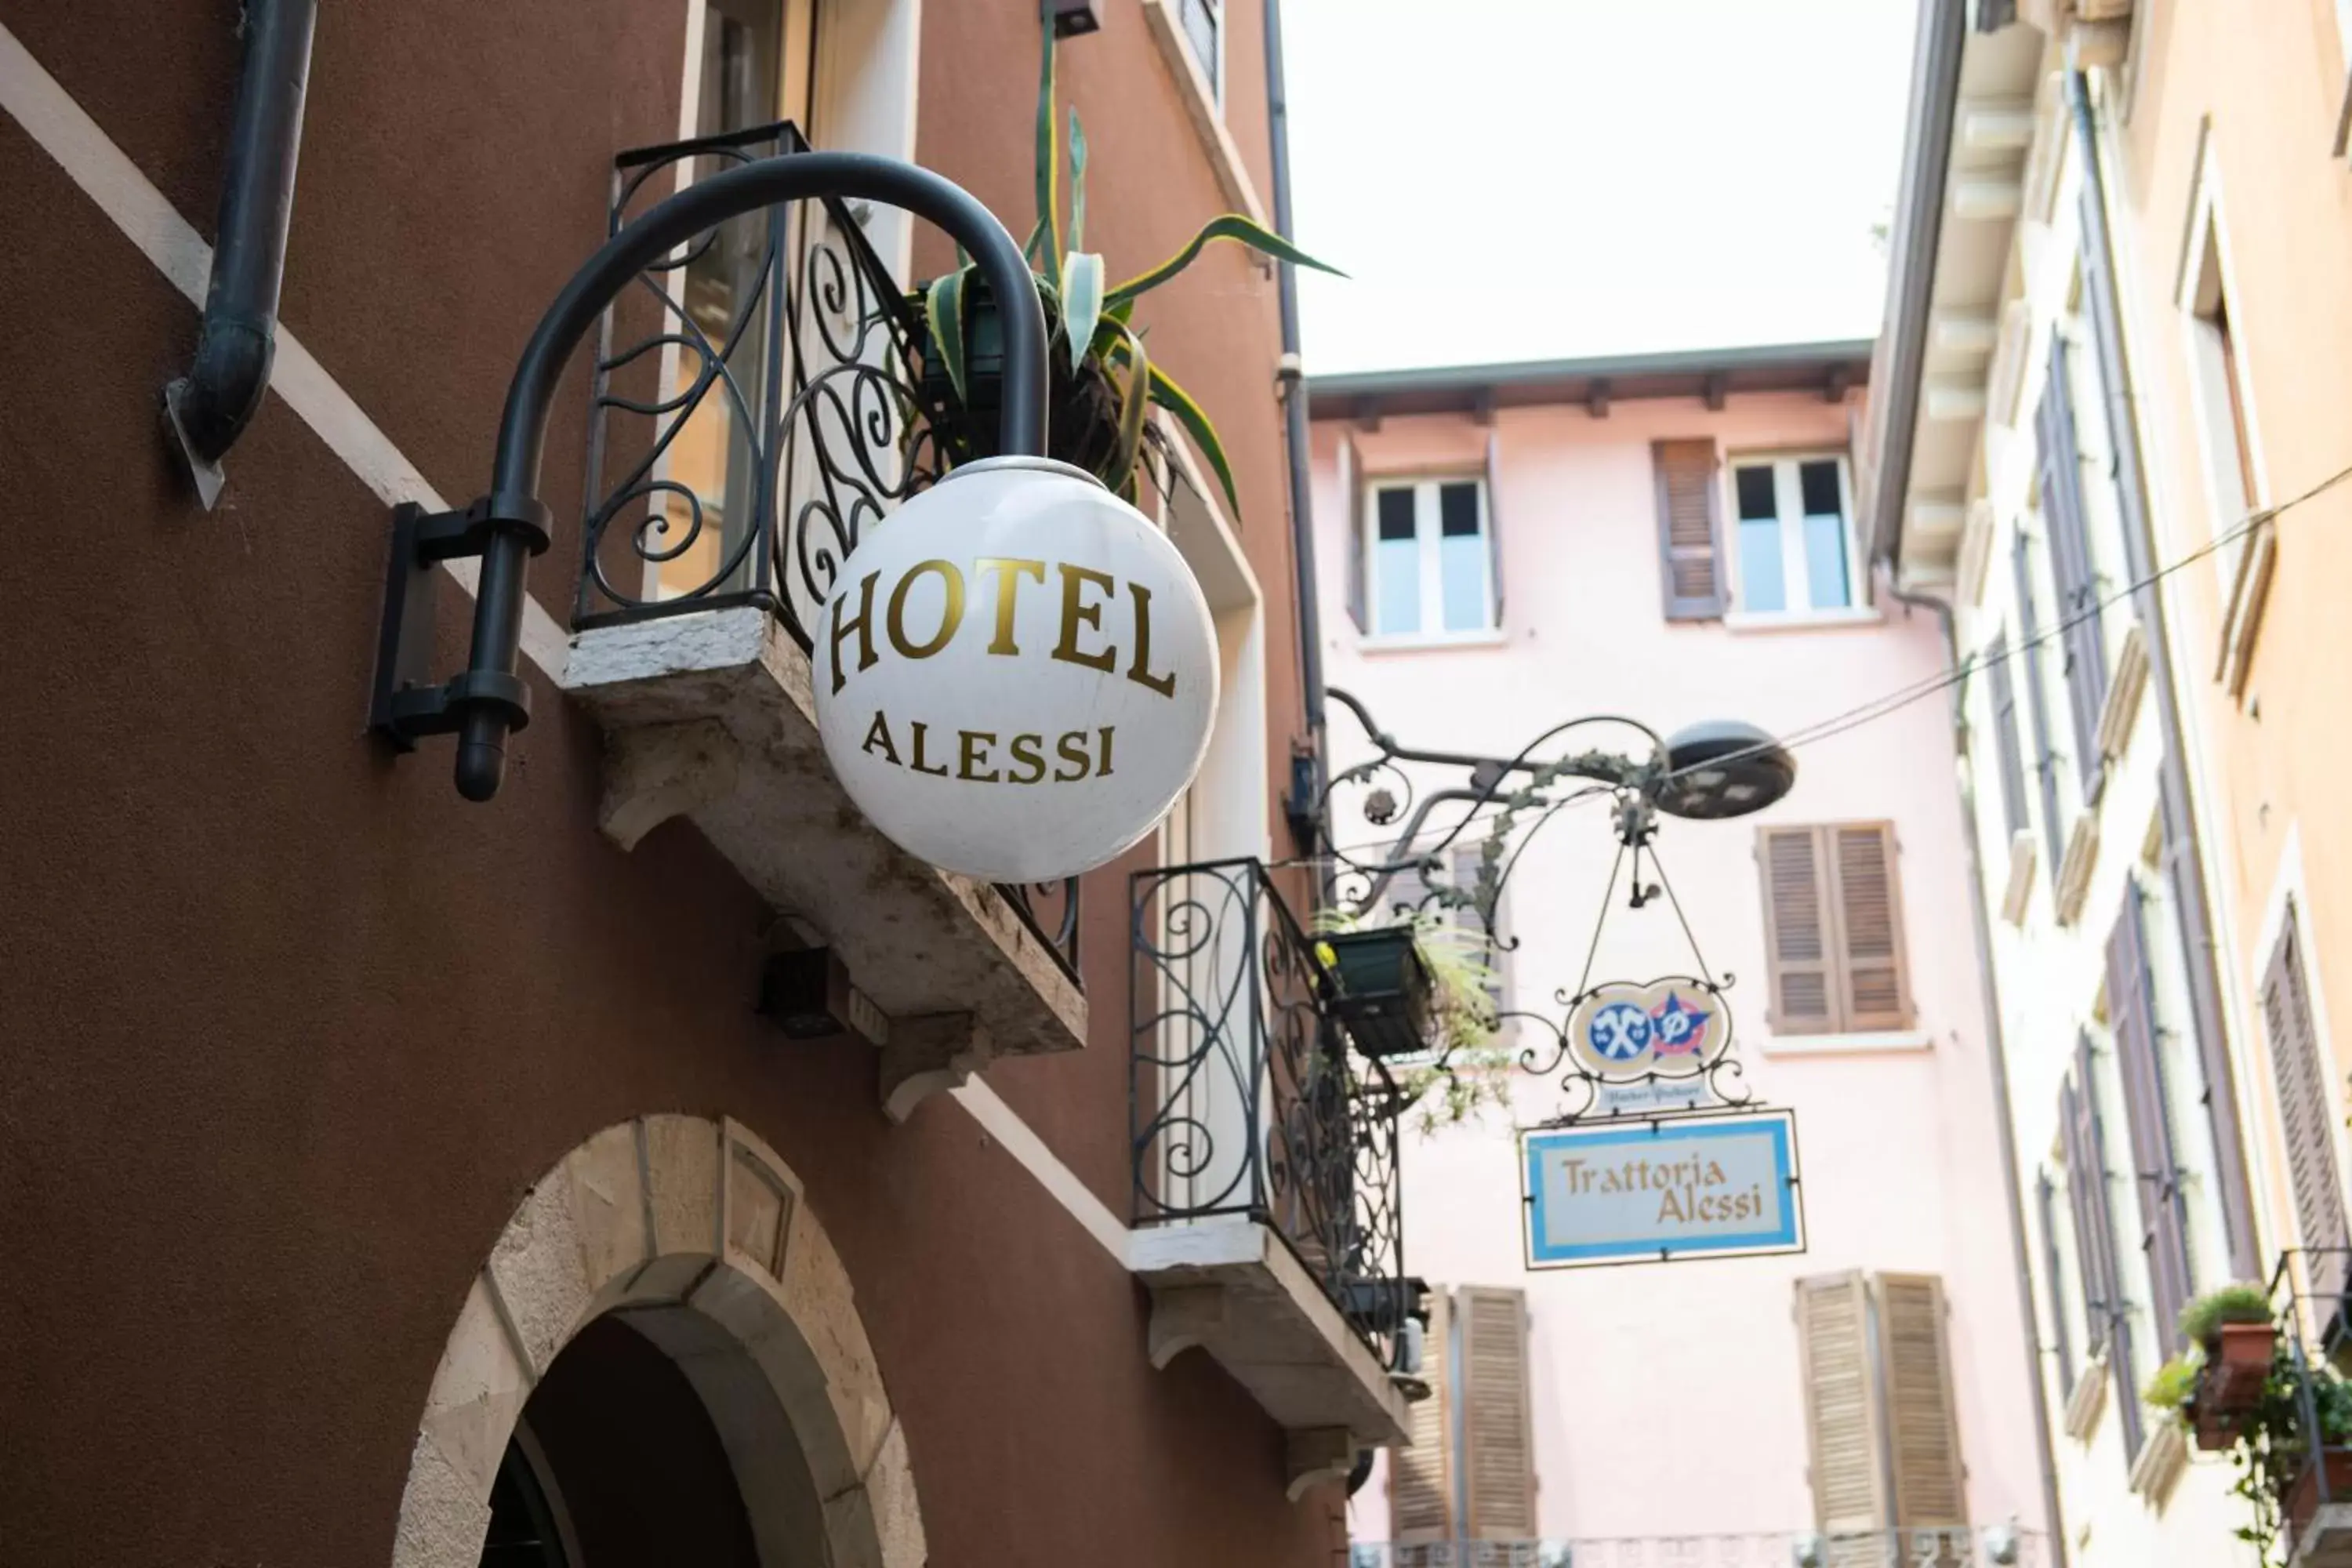 Logo/Certificate/Sign in Alessi Hotel Trattoria